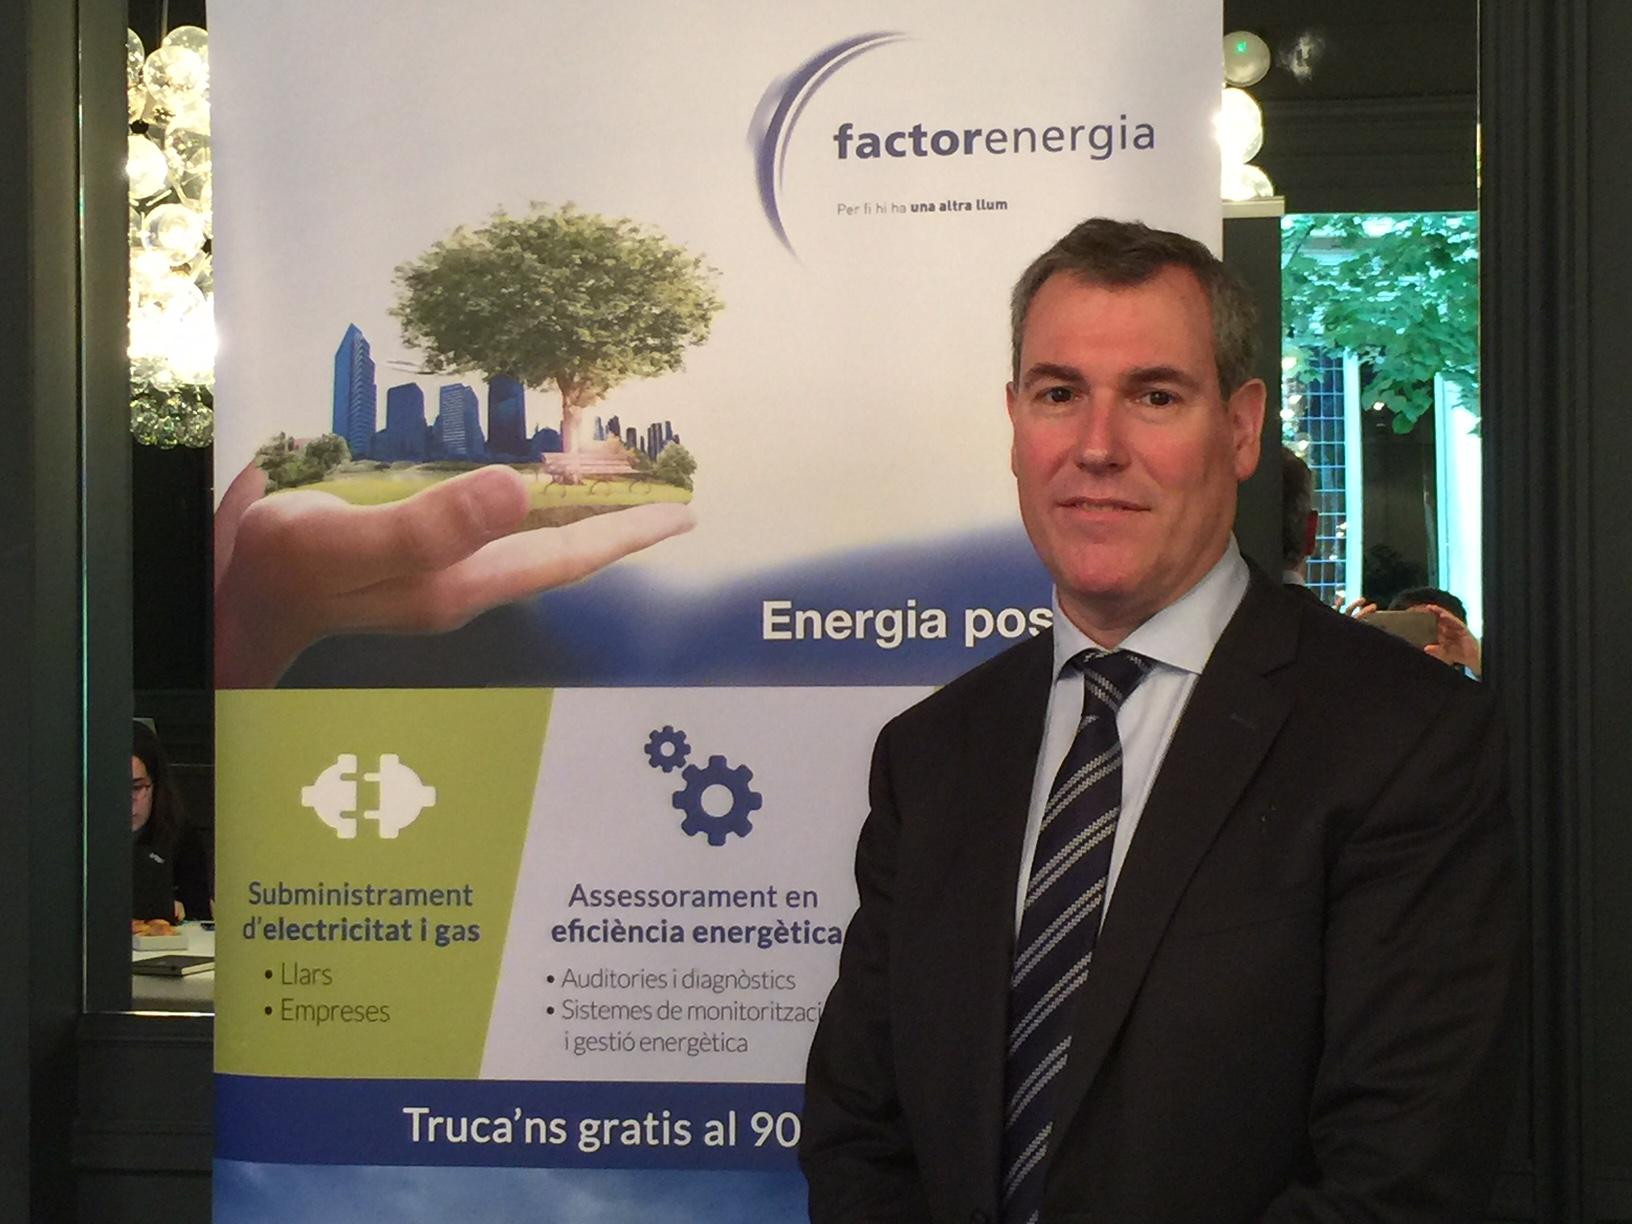 El consejero delegado de Factorenergia, Emilio Rousaud, en la presentación de resultados de la compañía /CG